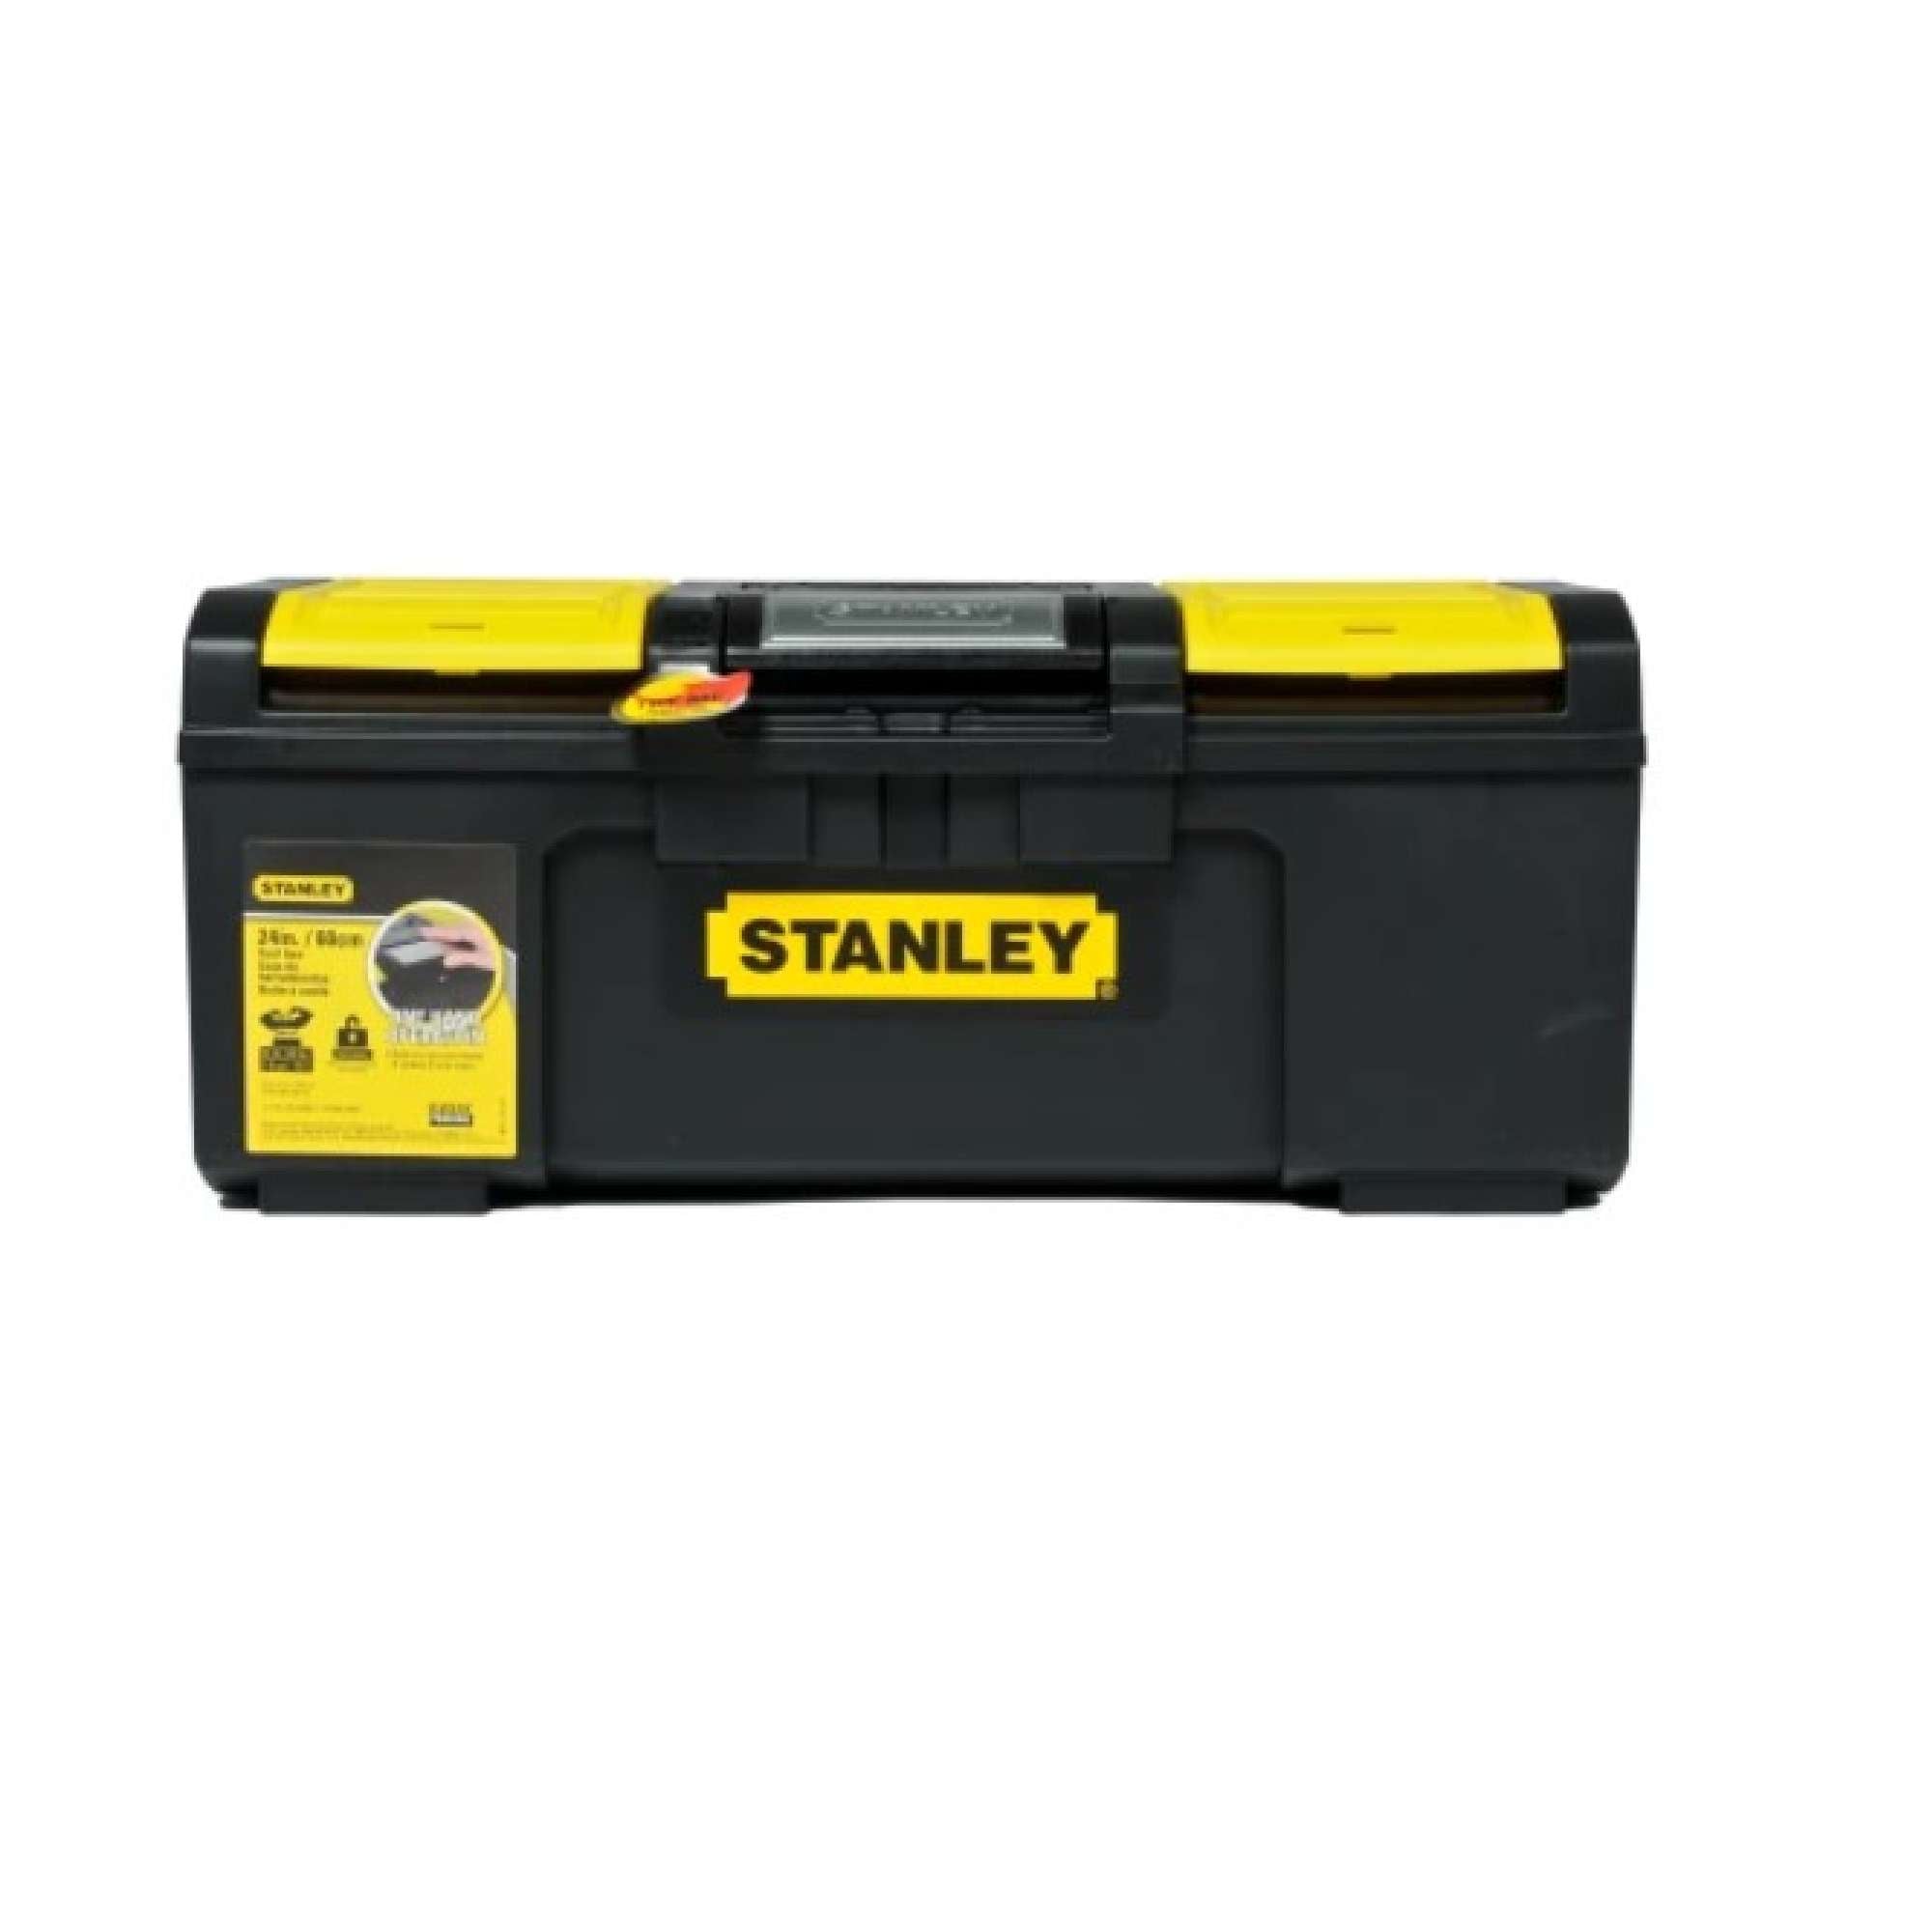 Cassetta 24' - Stanley 1-79-218